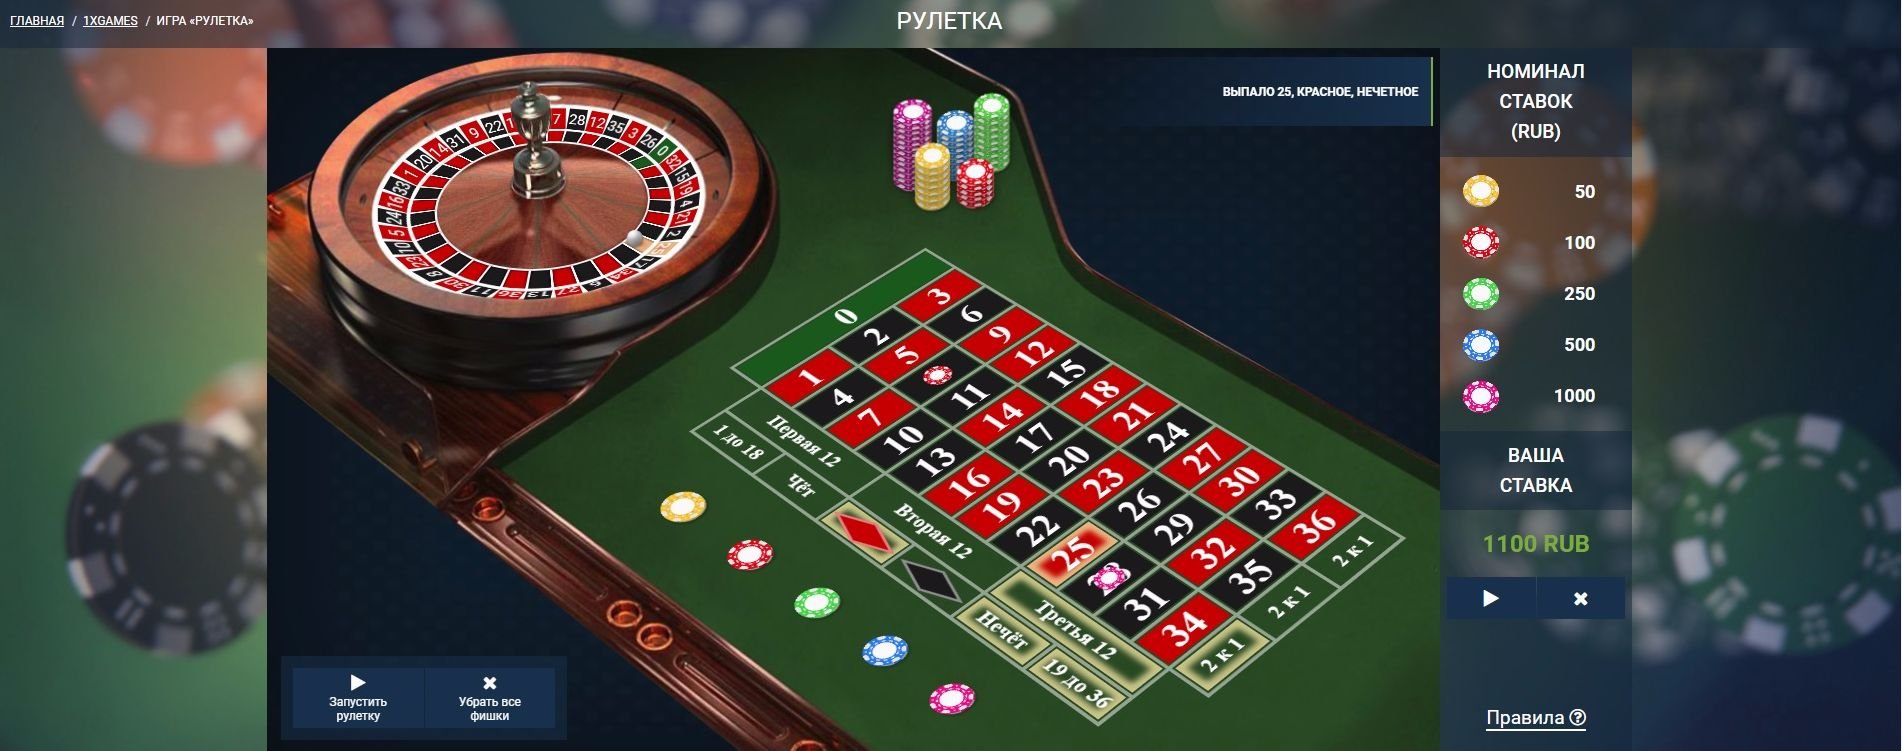 Отзывы о казино 1xbet европейская рулетка скачать азино777 с официального сайта и получите бонус 777 рублей